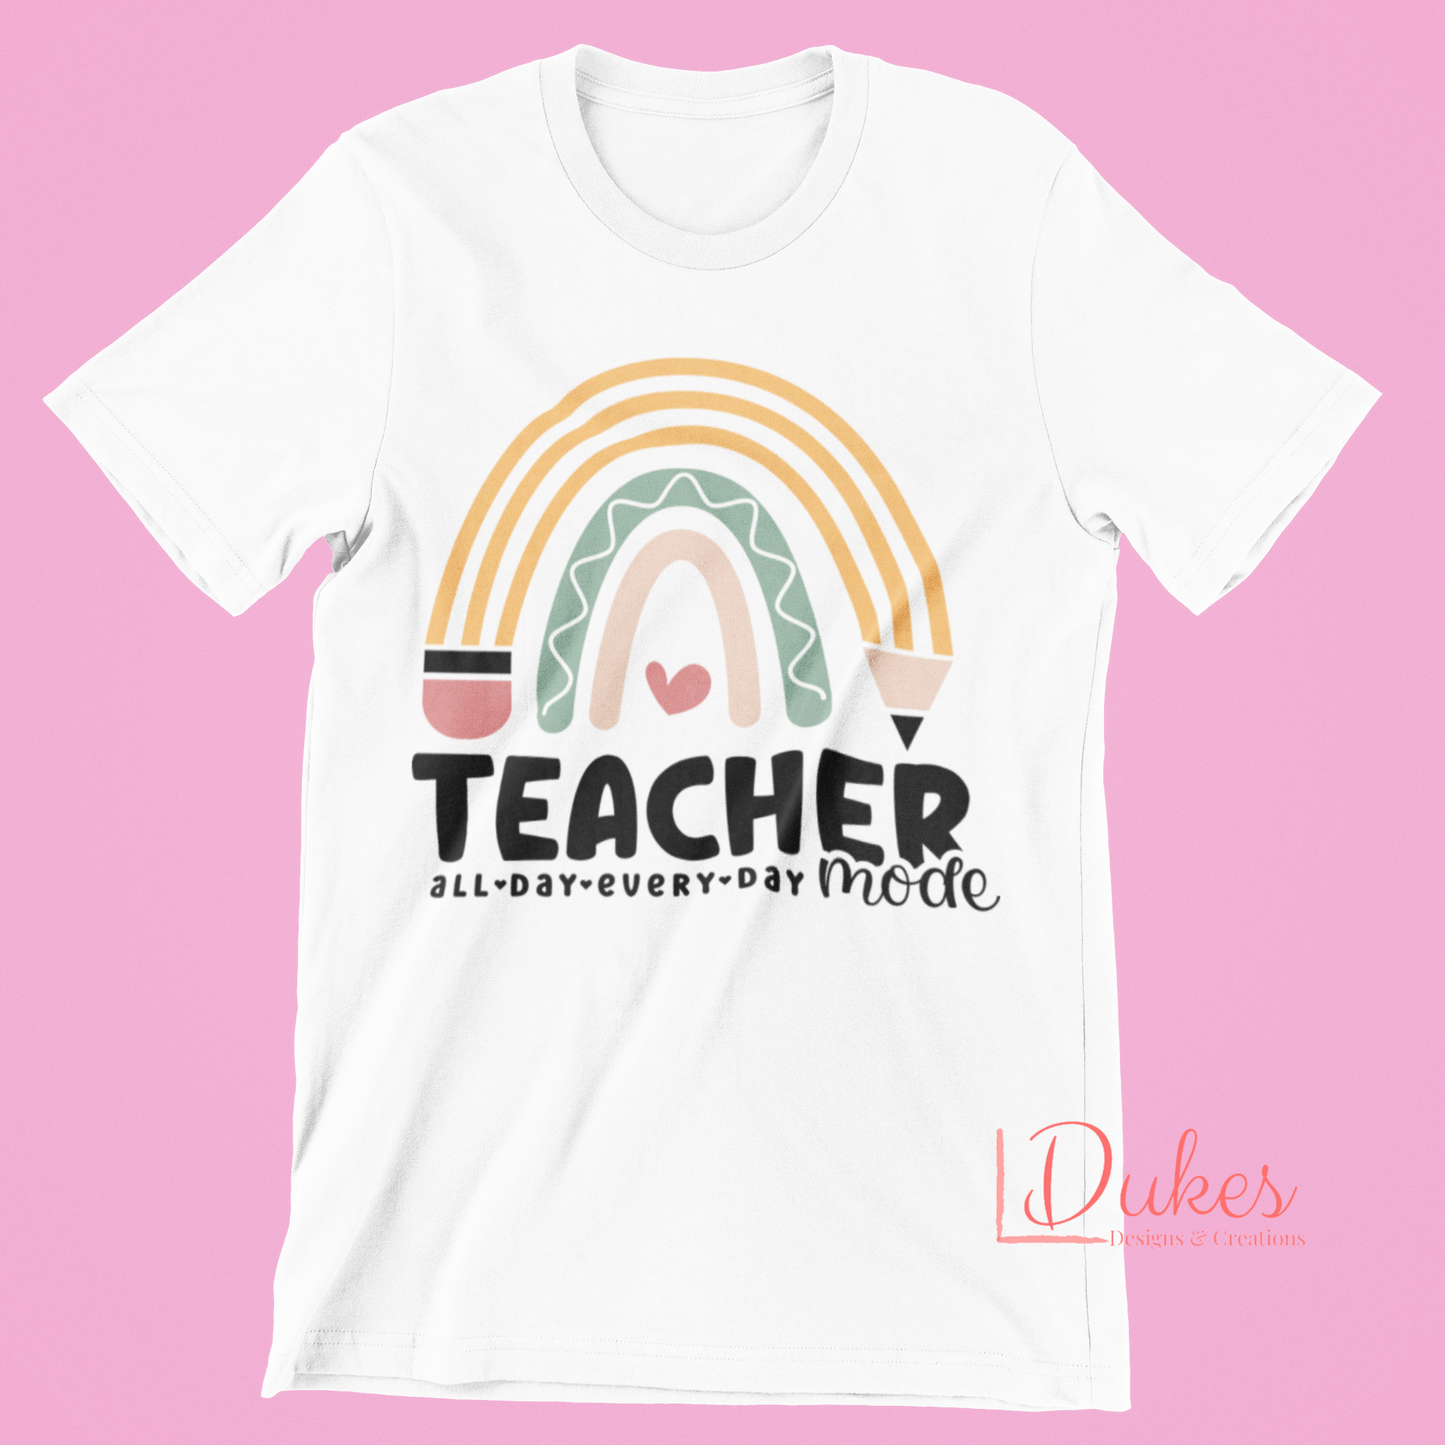 Teacher Mode Tee